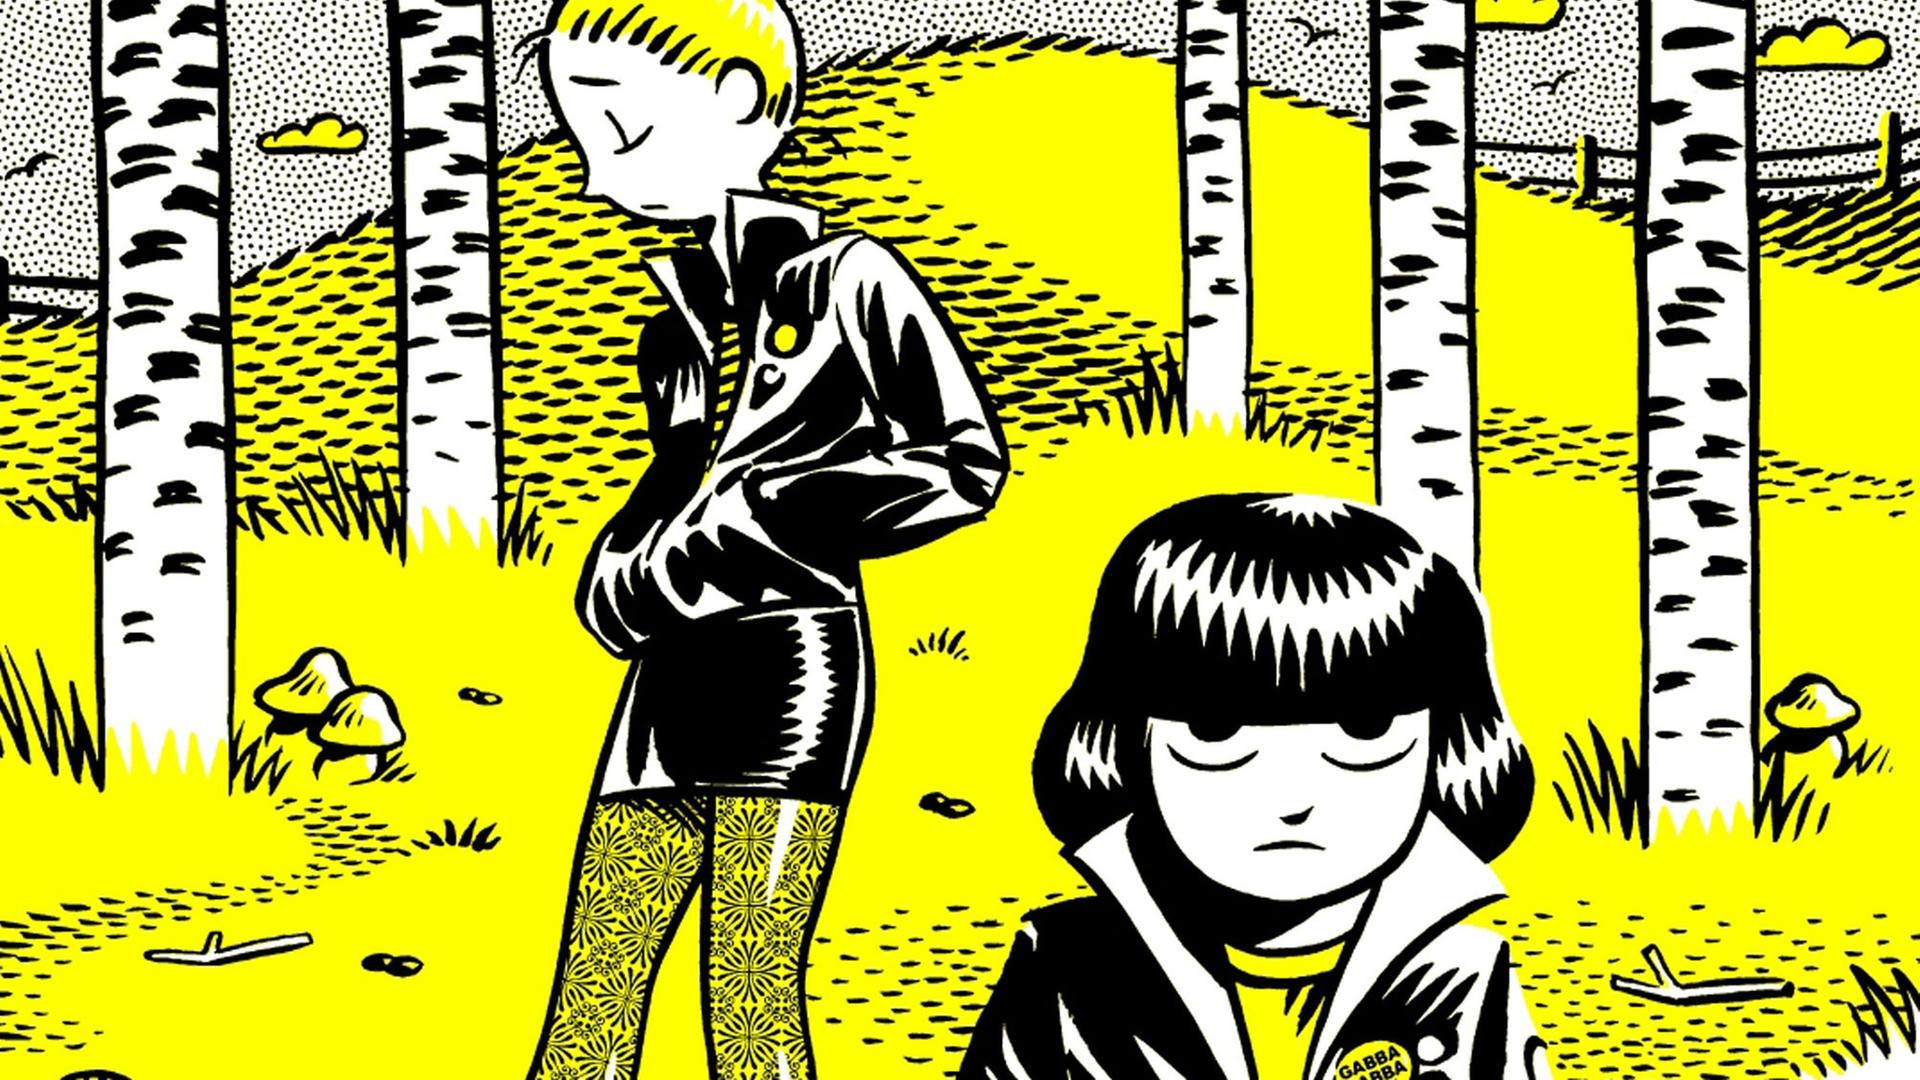 Buchcover des Comics "Blitzkrieg der Liebe" des finnischen Künstlers Petteri Tikkanen